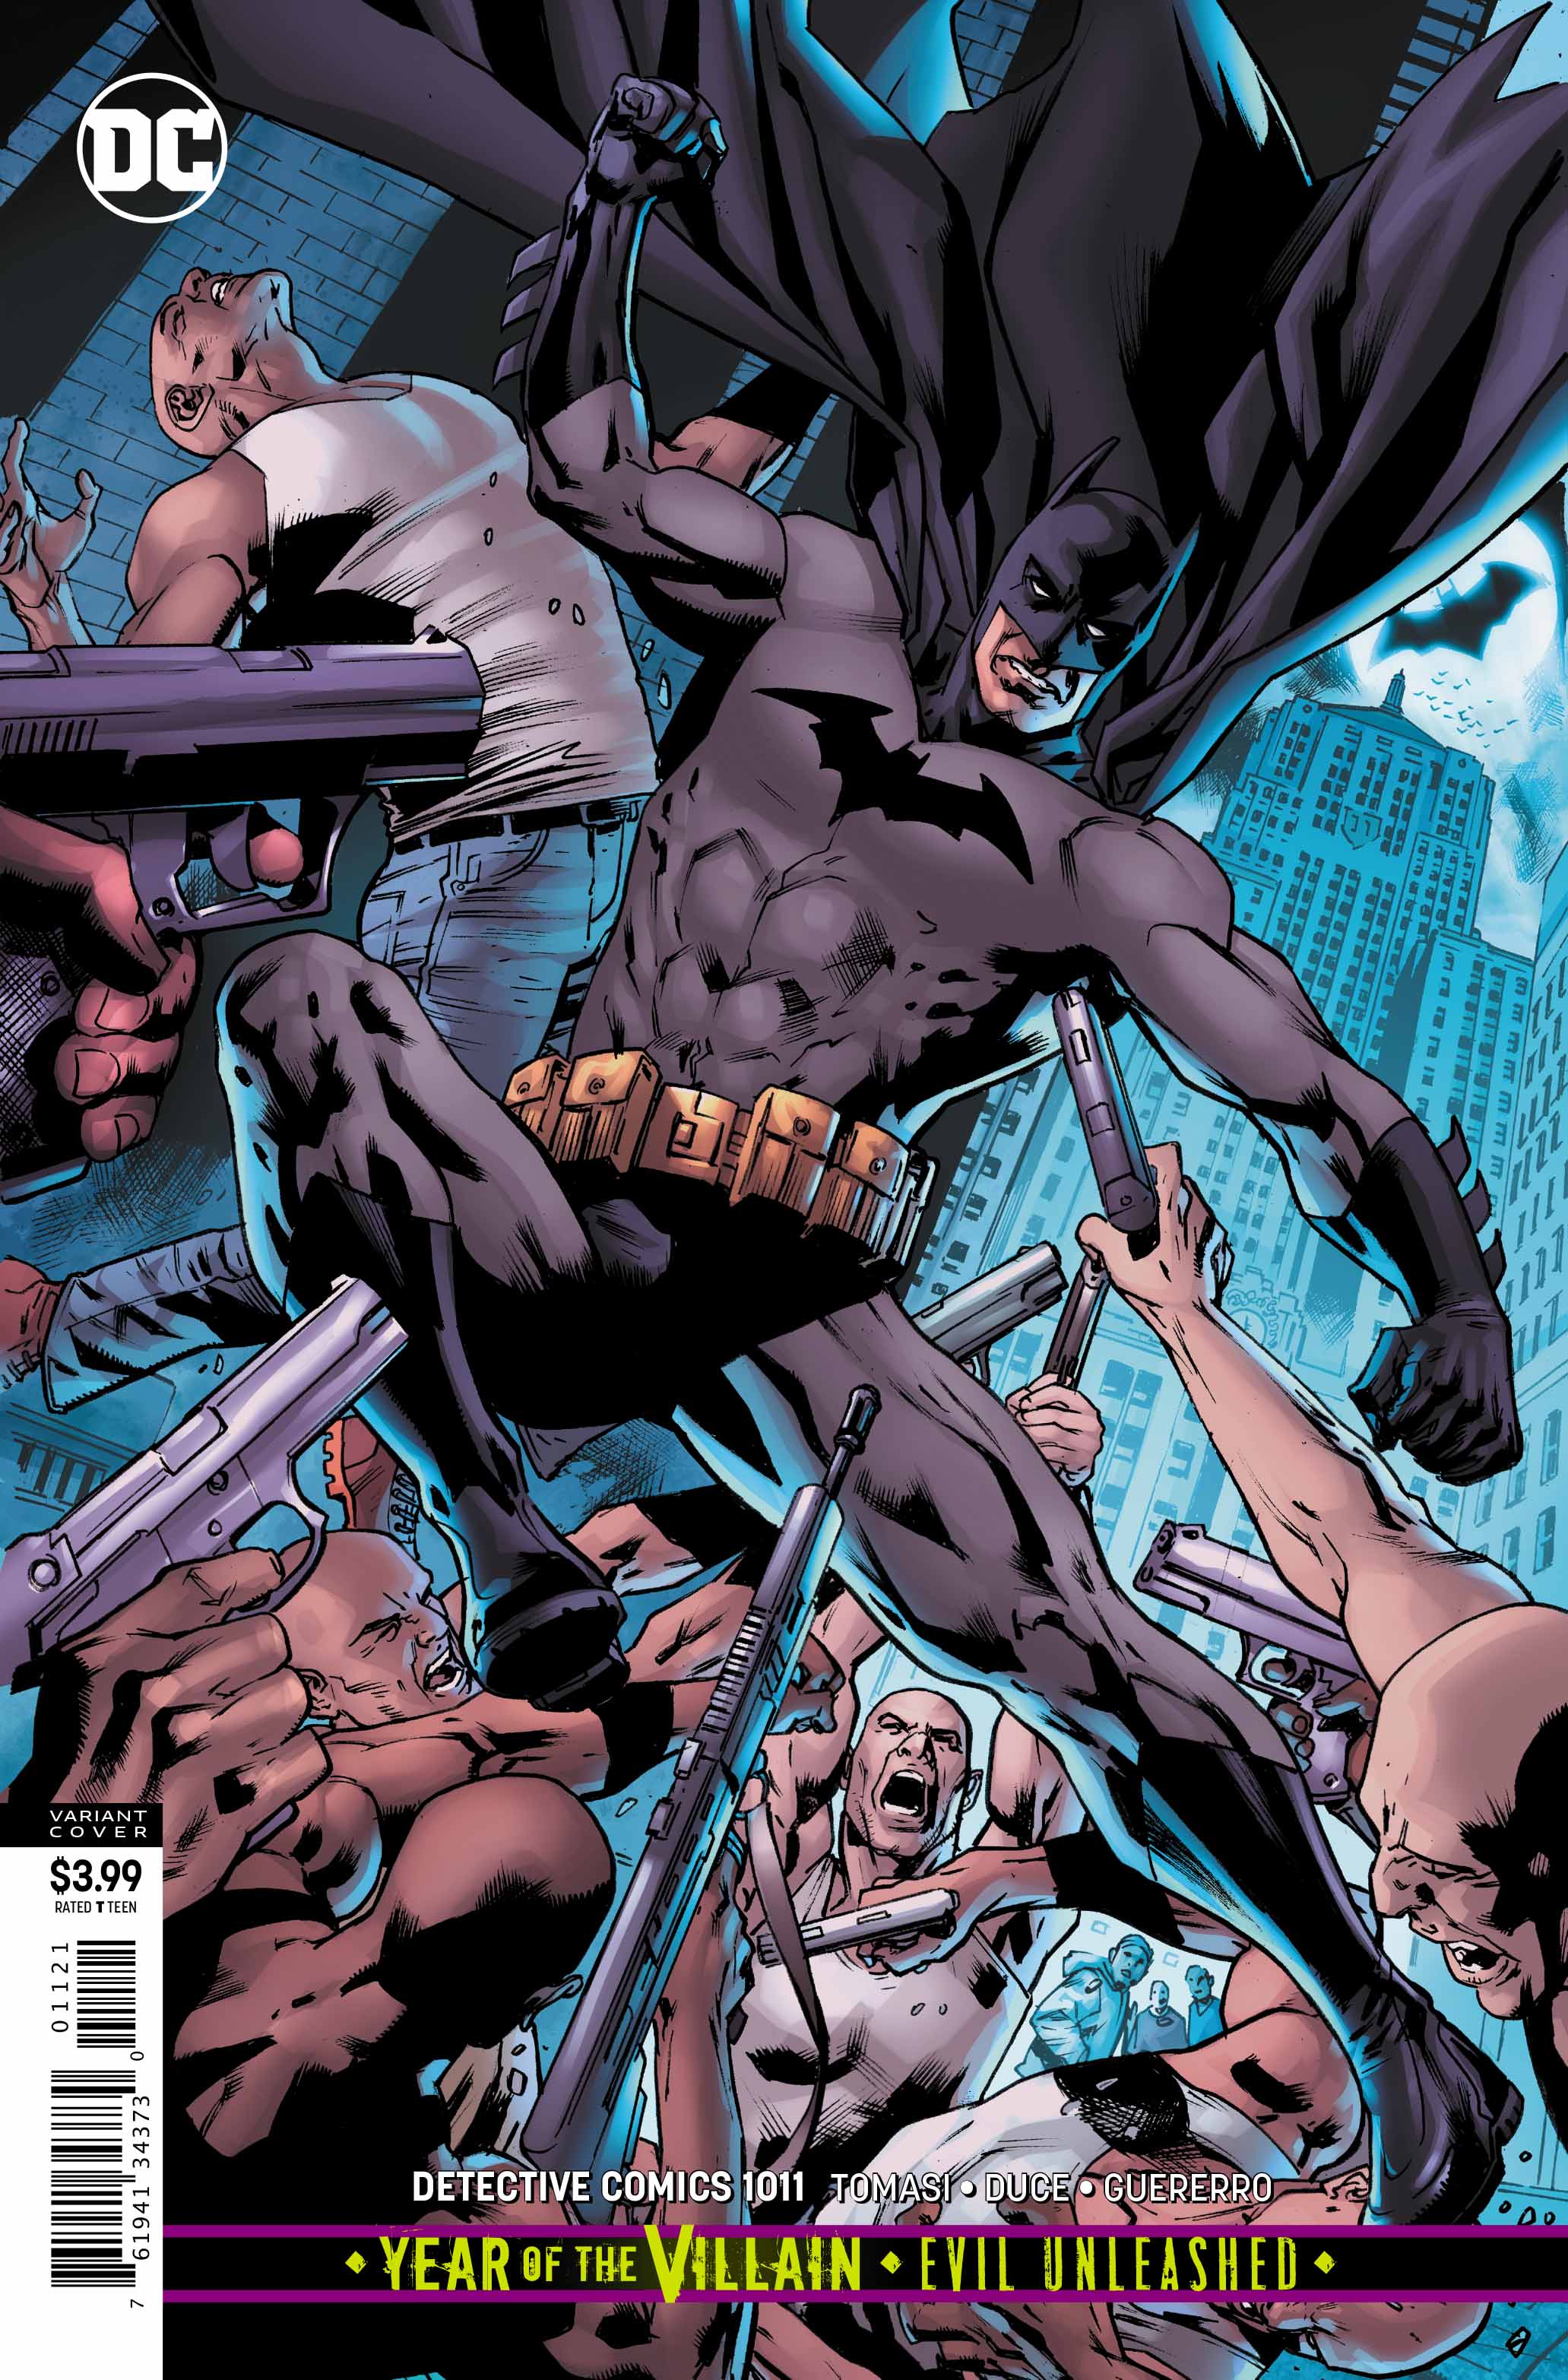 Detective Comics #1011 variant cover